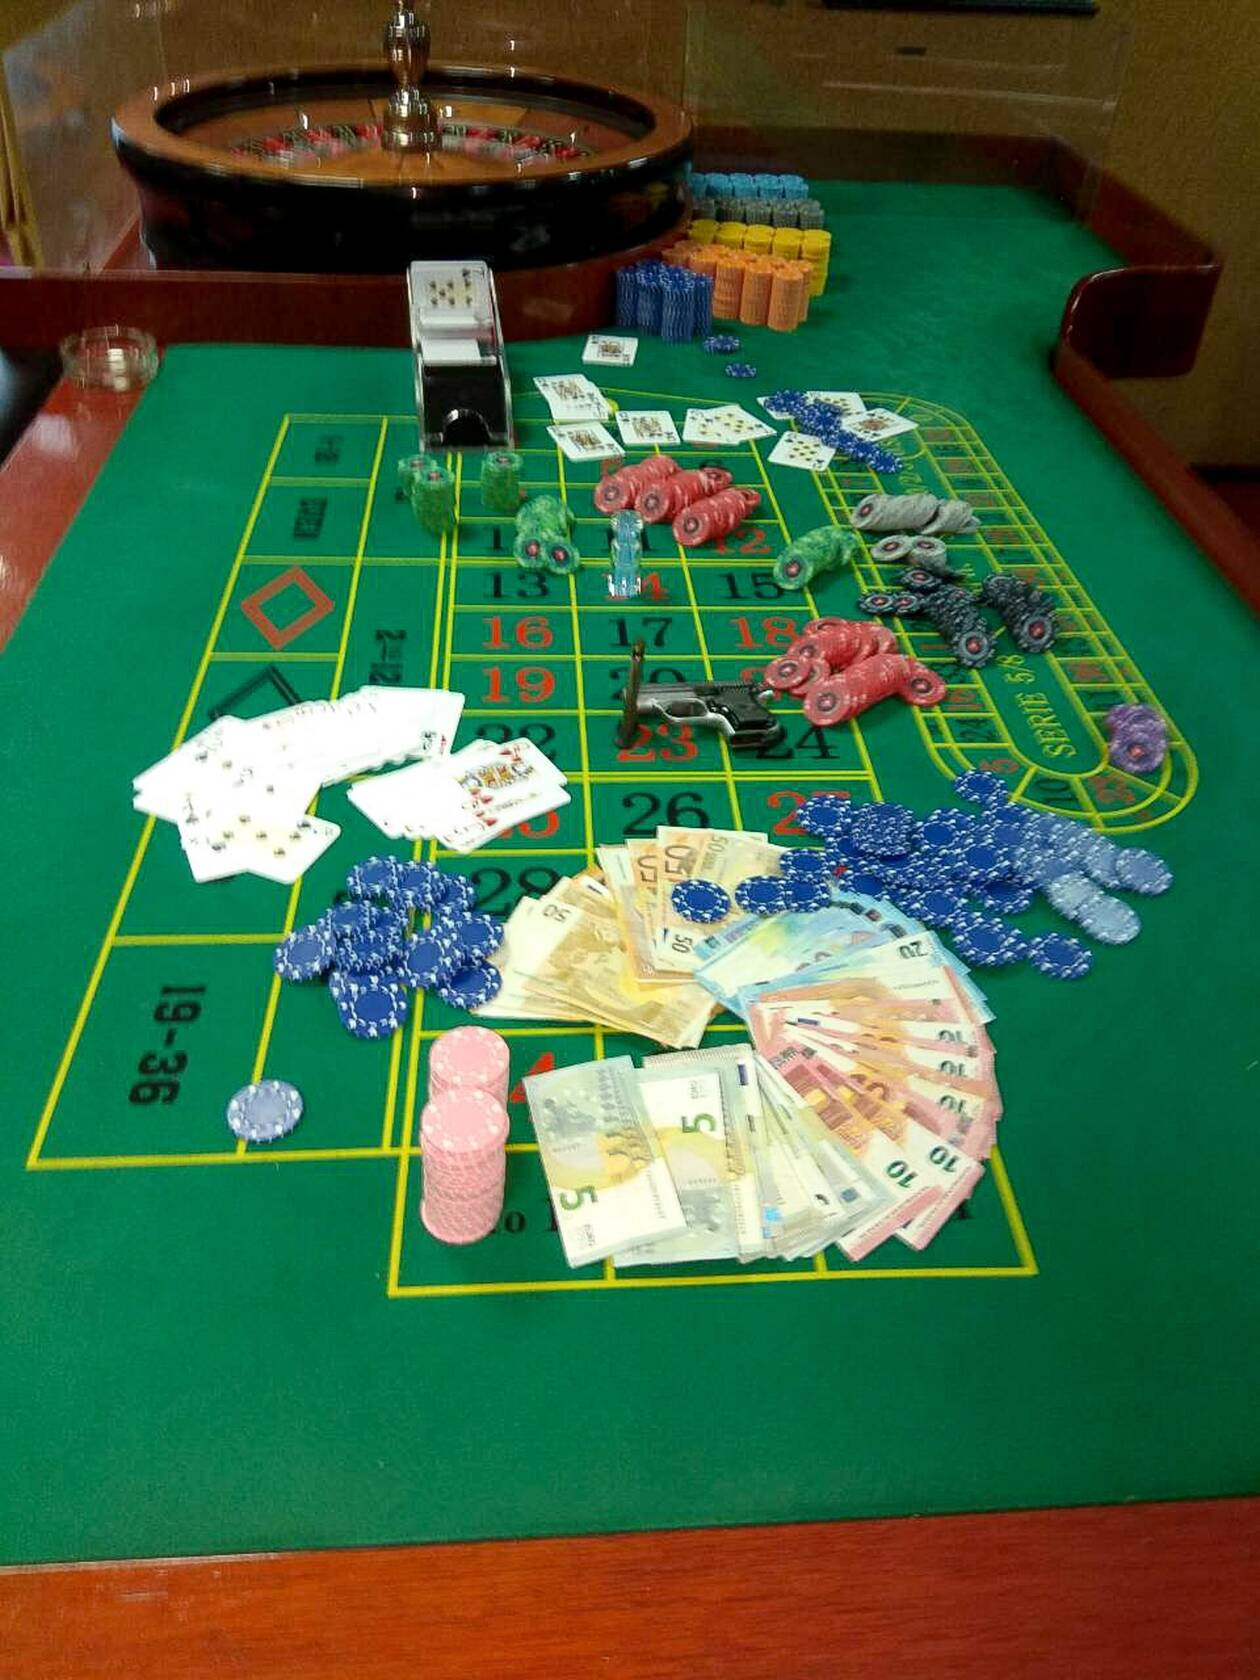 Ρέθυμνο: Σπίτι λειτουργούσε σαν καζίνο εν μέσω lockdown - Συλλήψεις για παράνομα τυχερά παιχνίδια